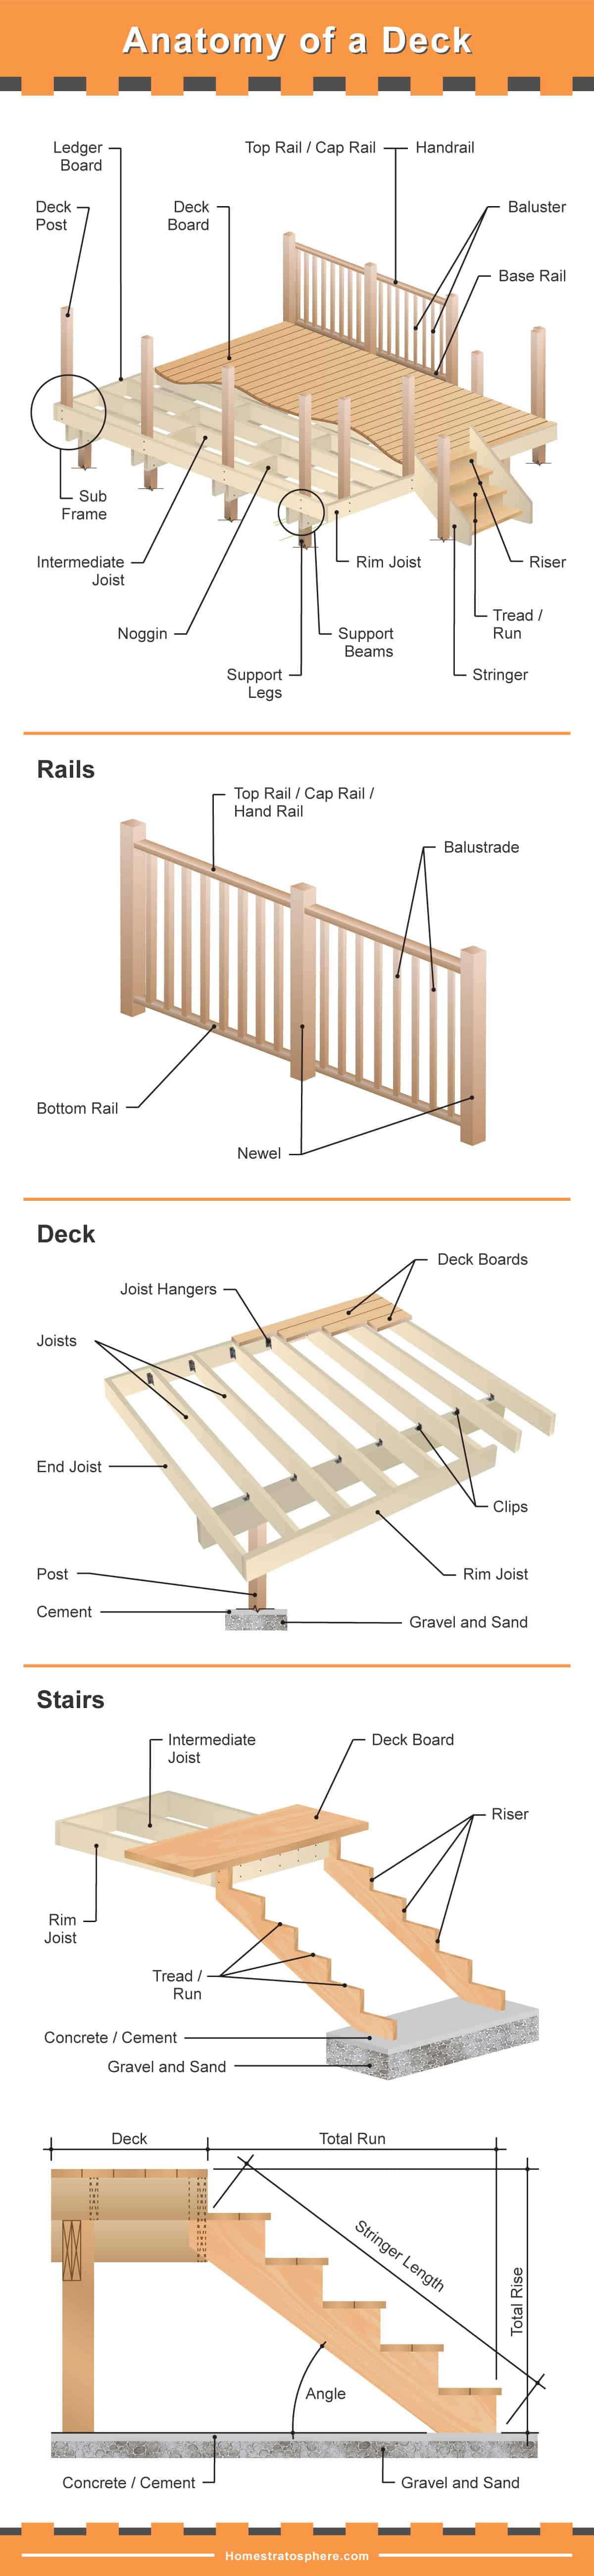 甲板部分-基础、栏杆、甲板和甲板楼梯详图。